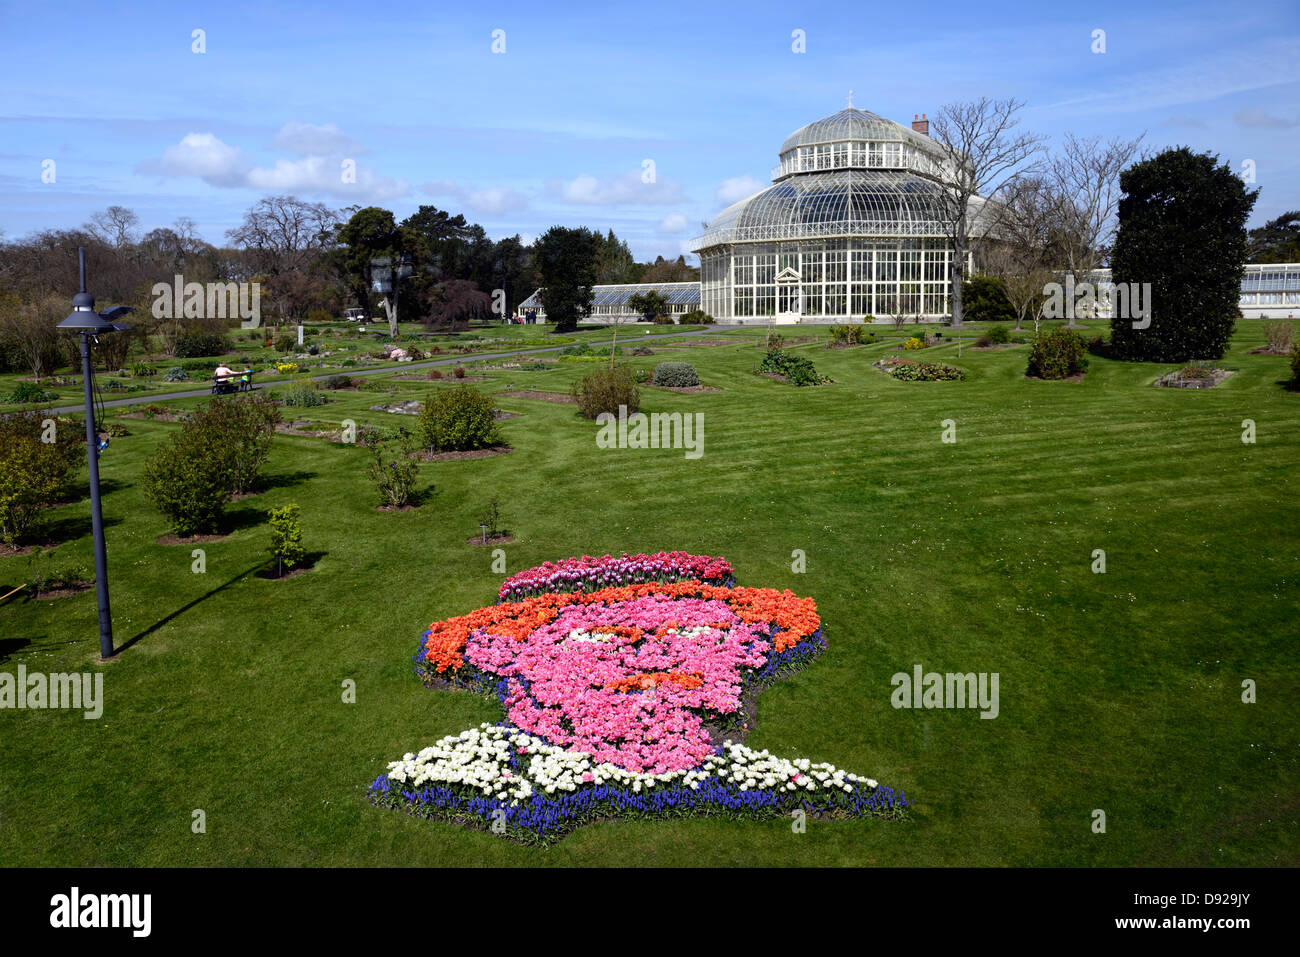 Portrait de James Joyce parterre de tulipes botanic gardens Dublin Irlande glasnevin bloomsday image emblématique jardin fleurs Banque D'Images